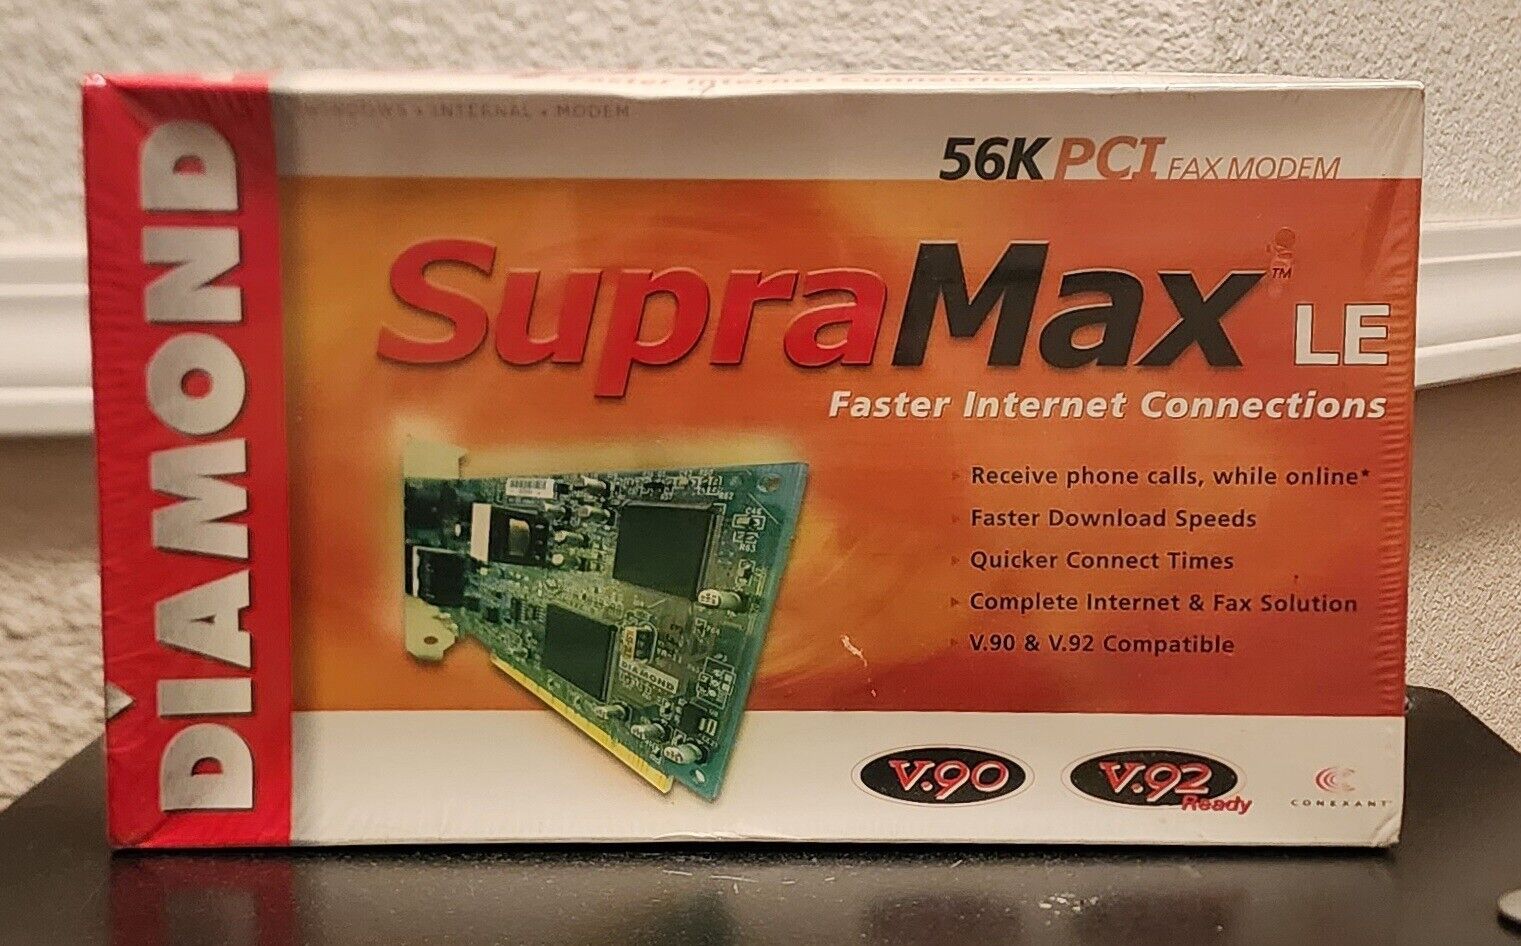 Diamond Supra Max Le 56K PCI Fax Modem